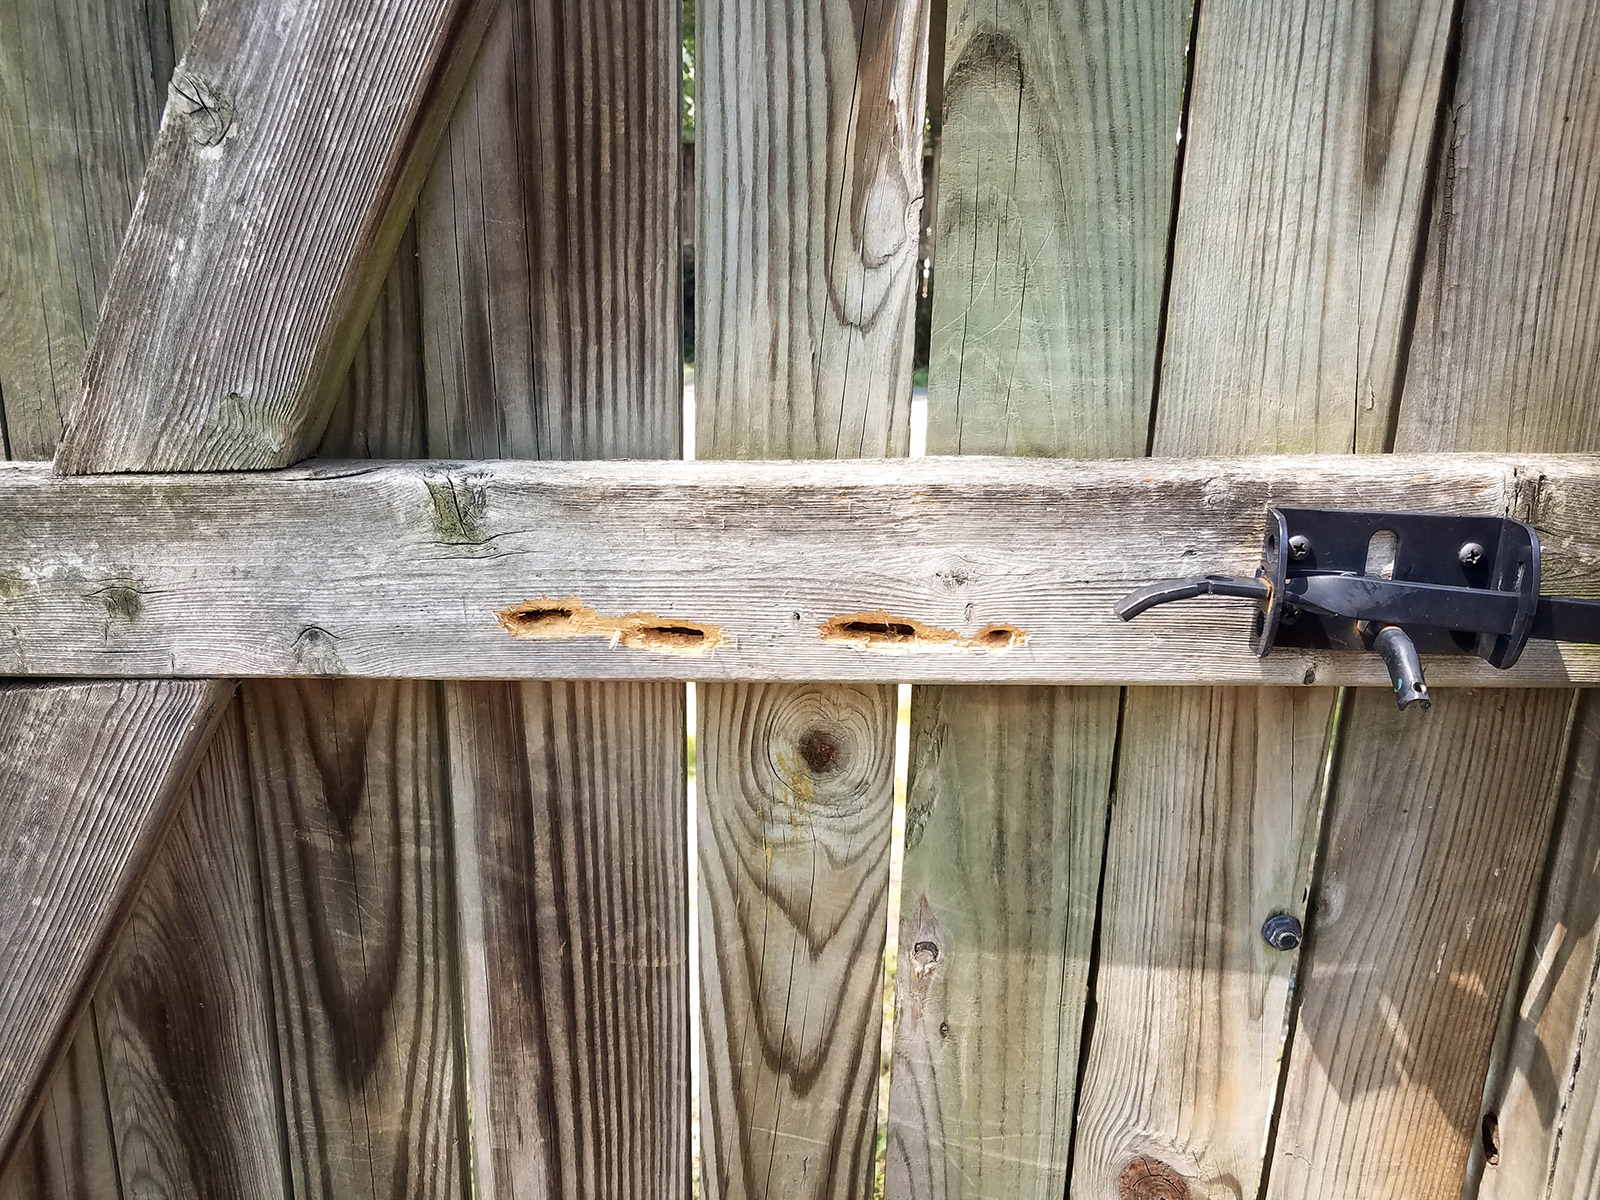 Woodpecker damage on a wooden gate